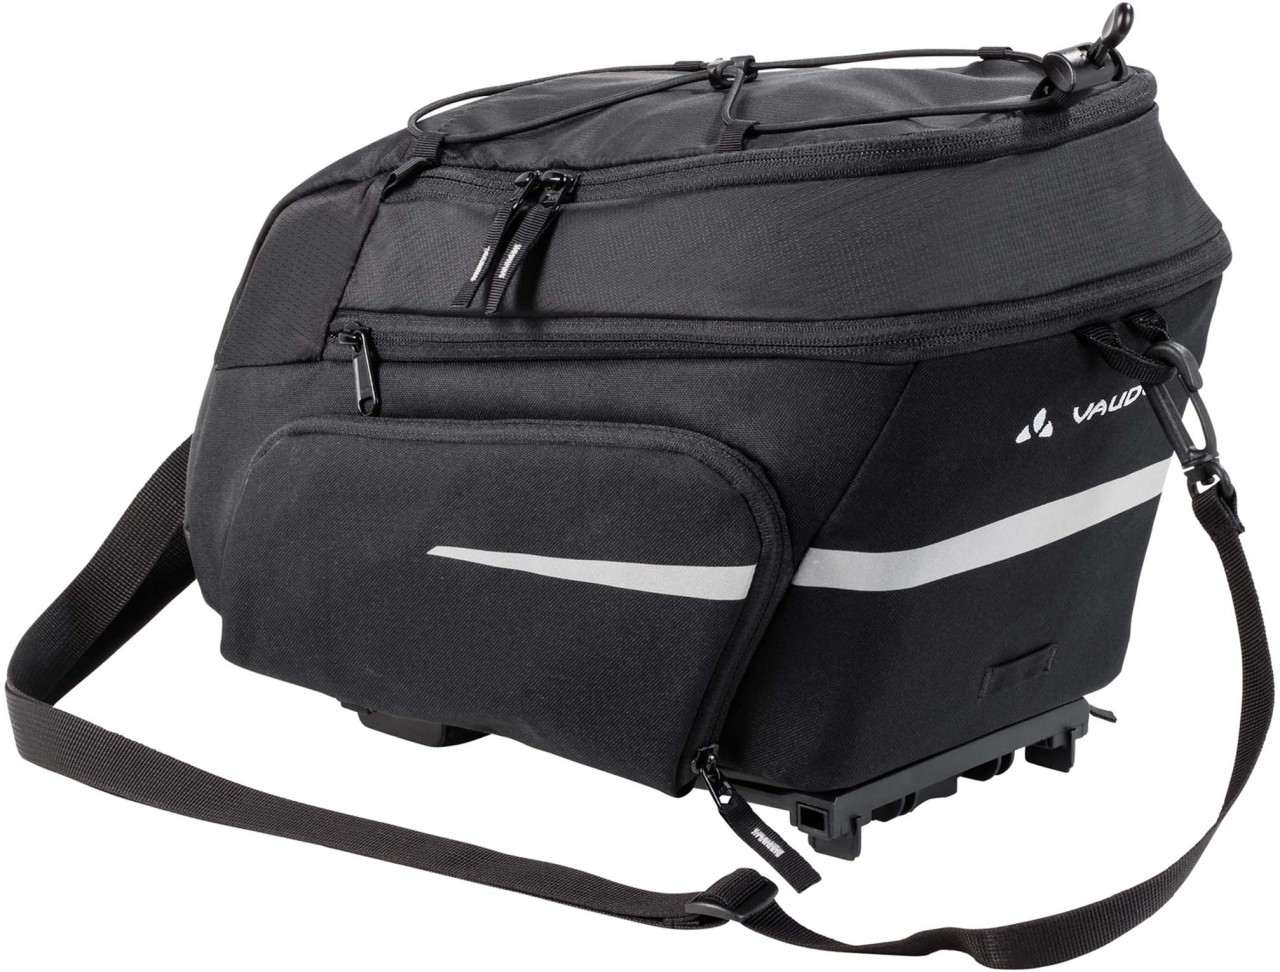 Vaude Silkroad Plus (i-Rack) Luggage Carrier Bag